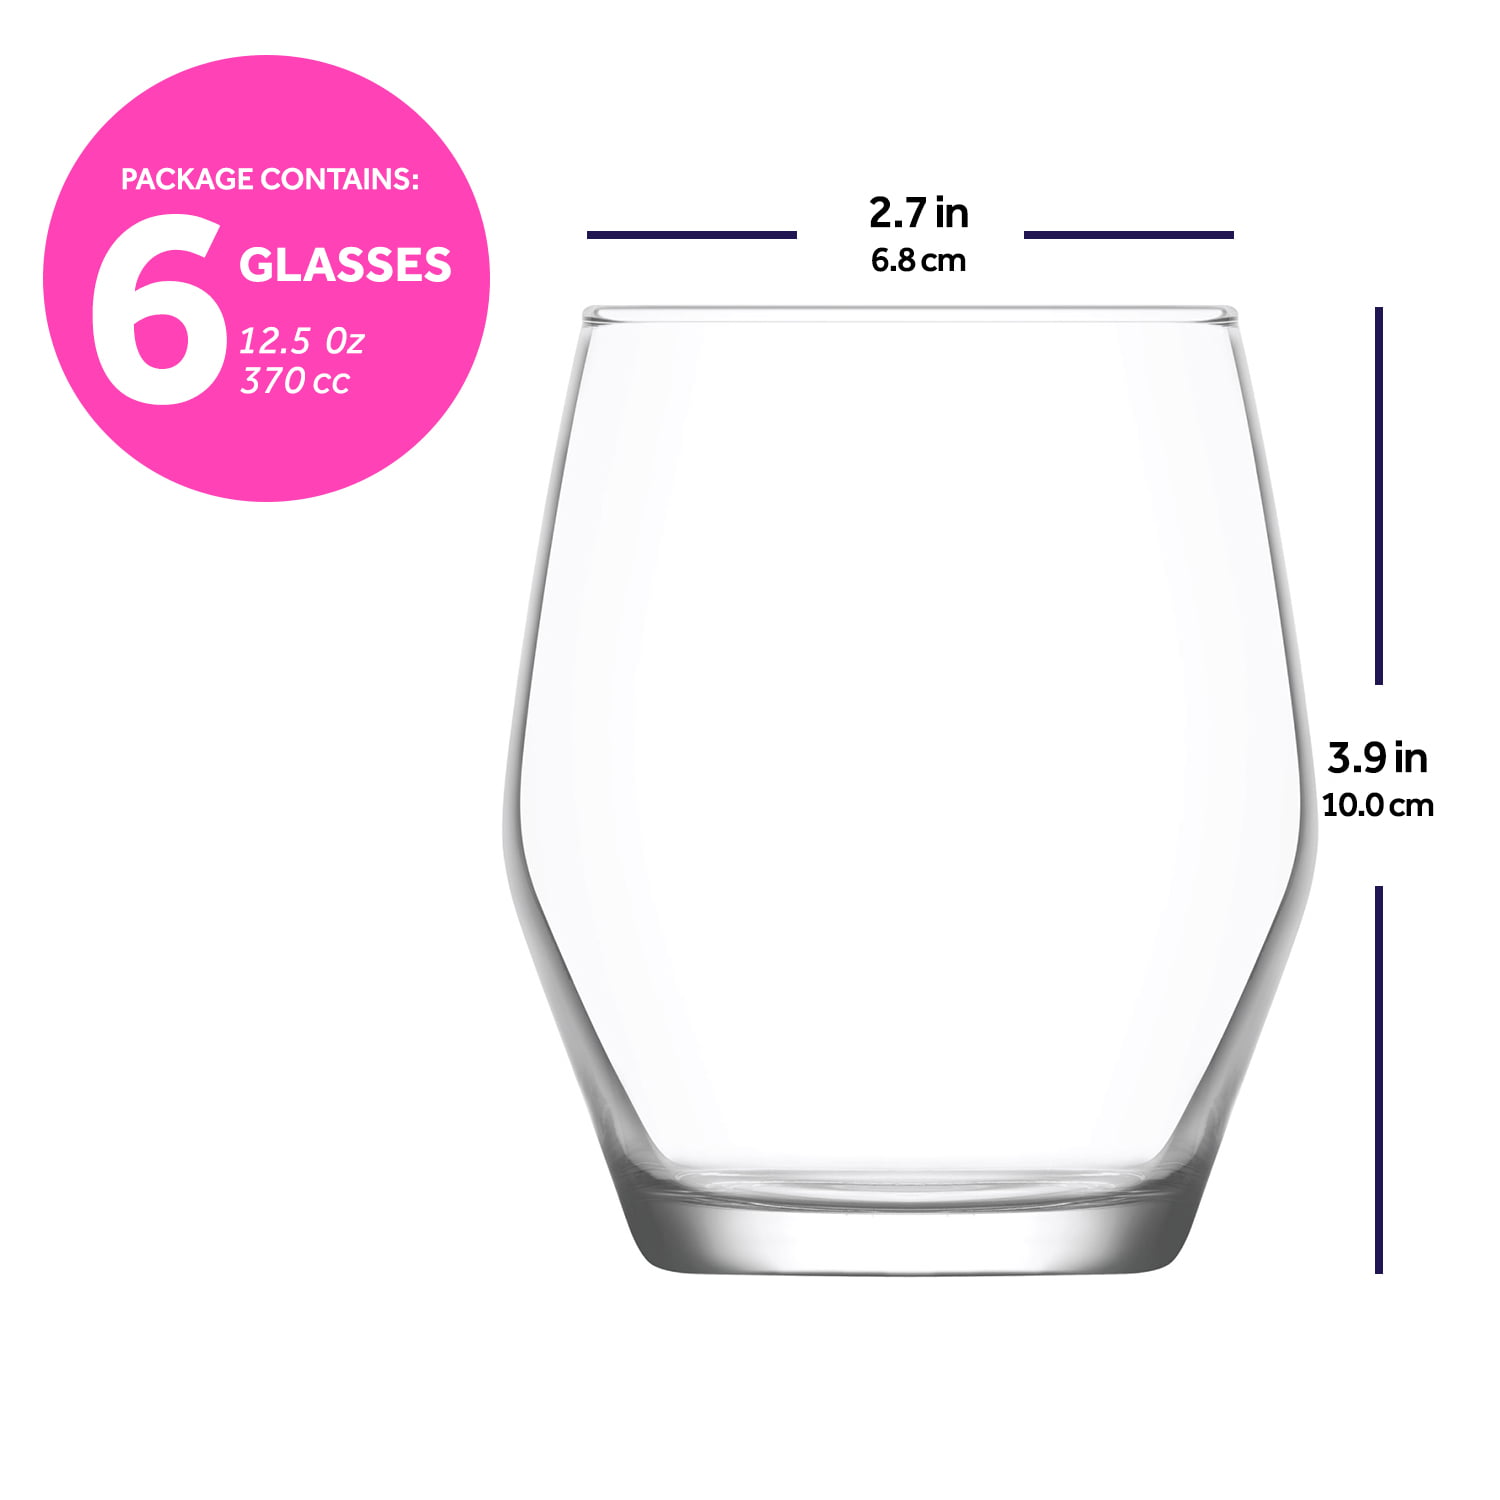 Lav Elegan 6-Piece Whiskey & Scotch Glasses Set, 10,75 oz